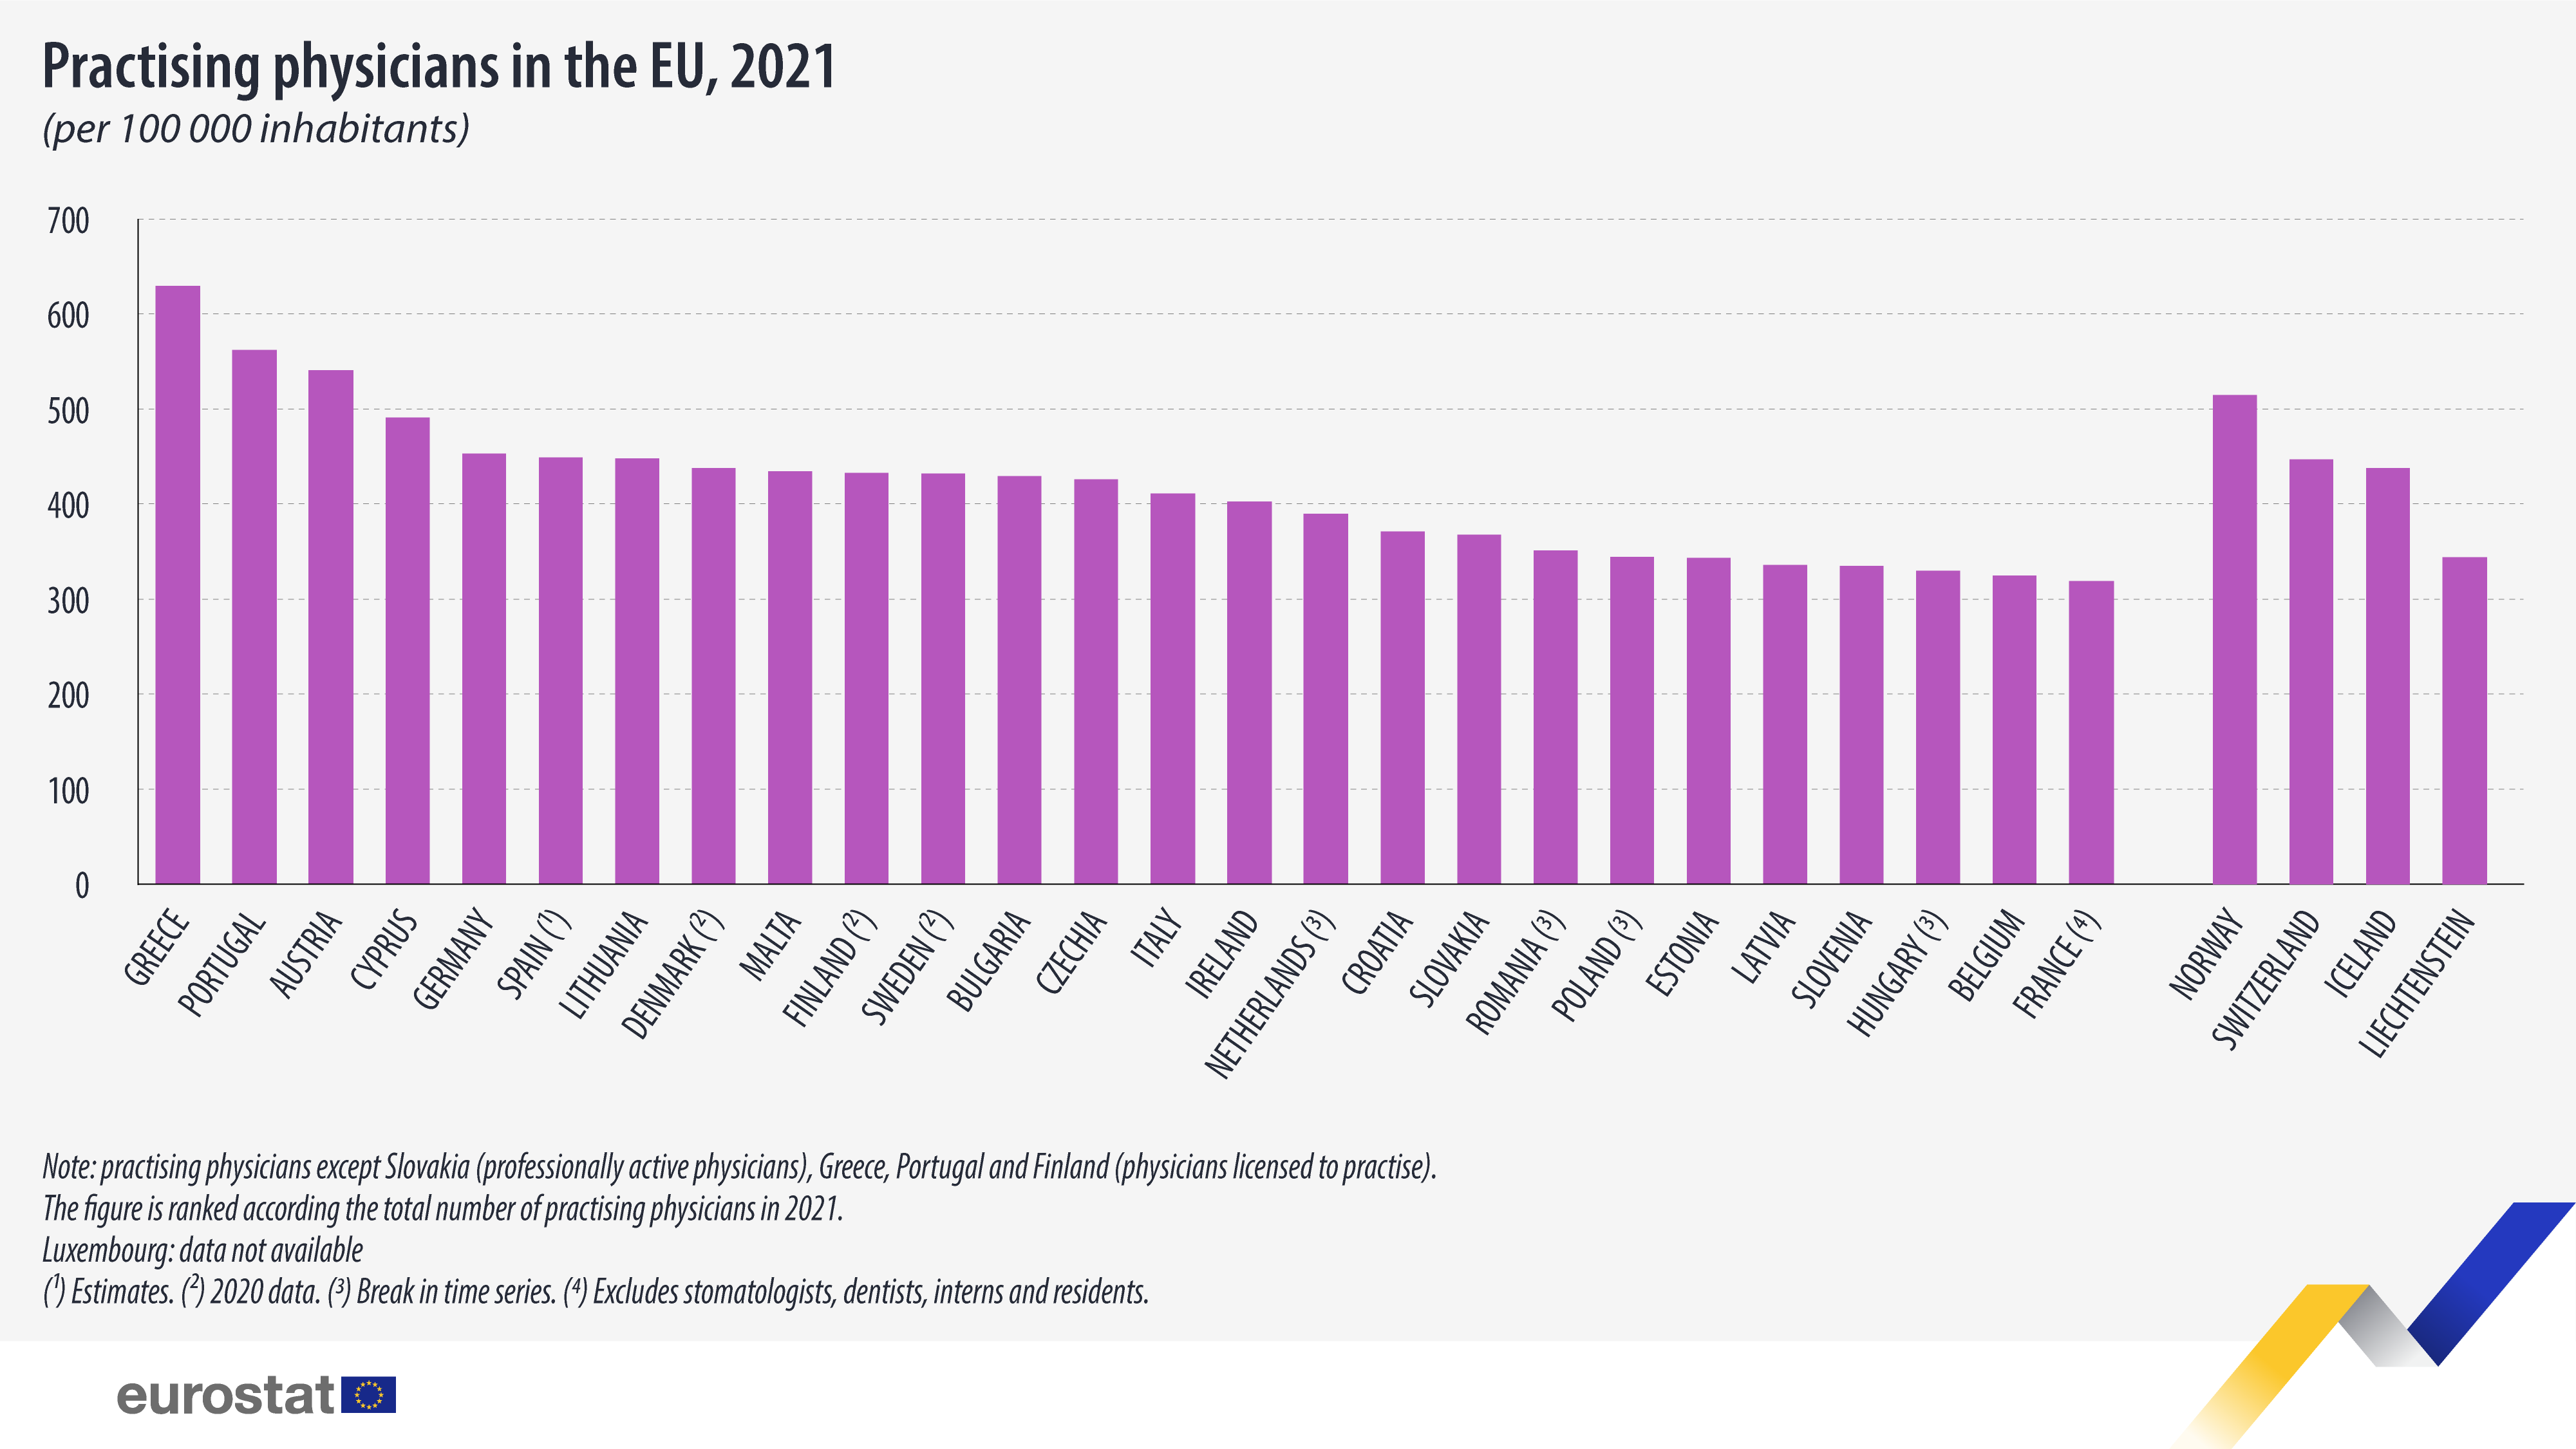 Pylväskaavio: Ammatissa toimivat lääkärit EU:ssa, 100 000 asukasta kohti, 2021